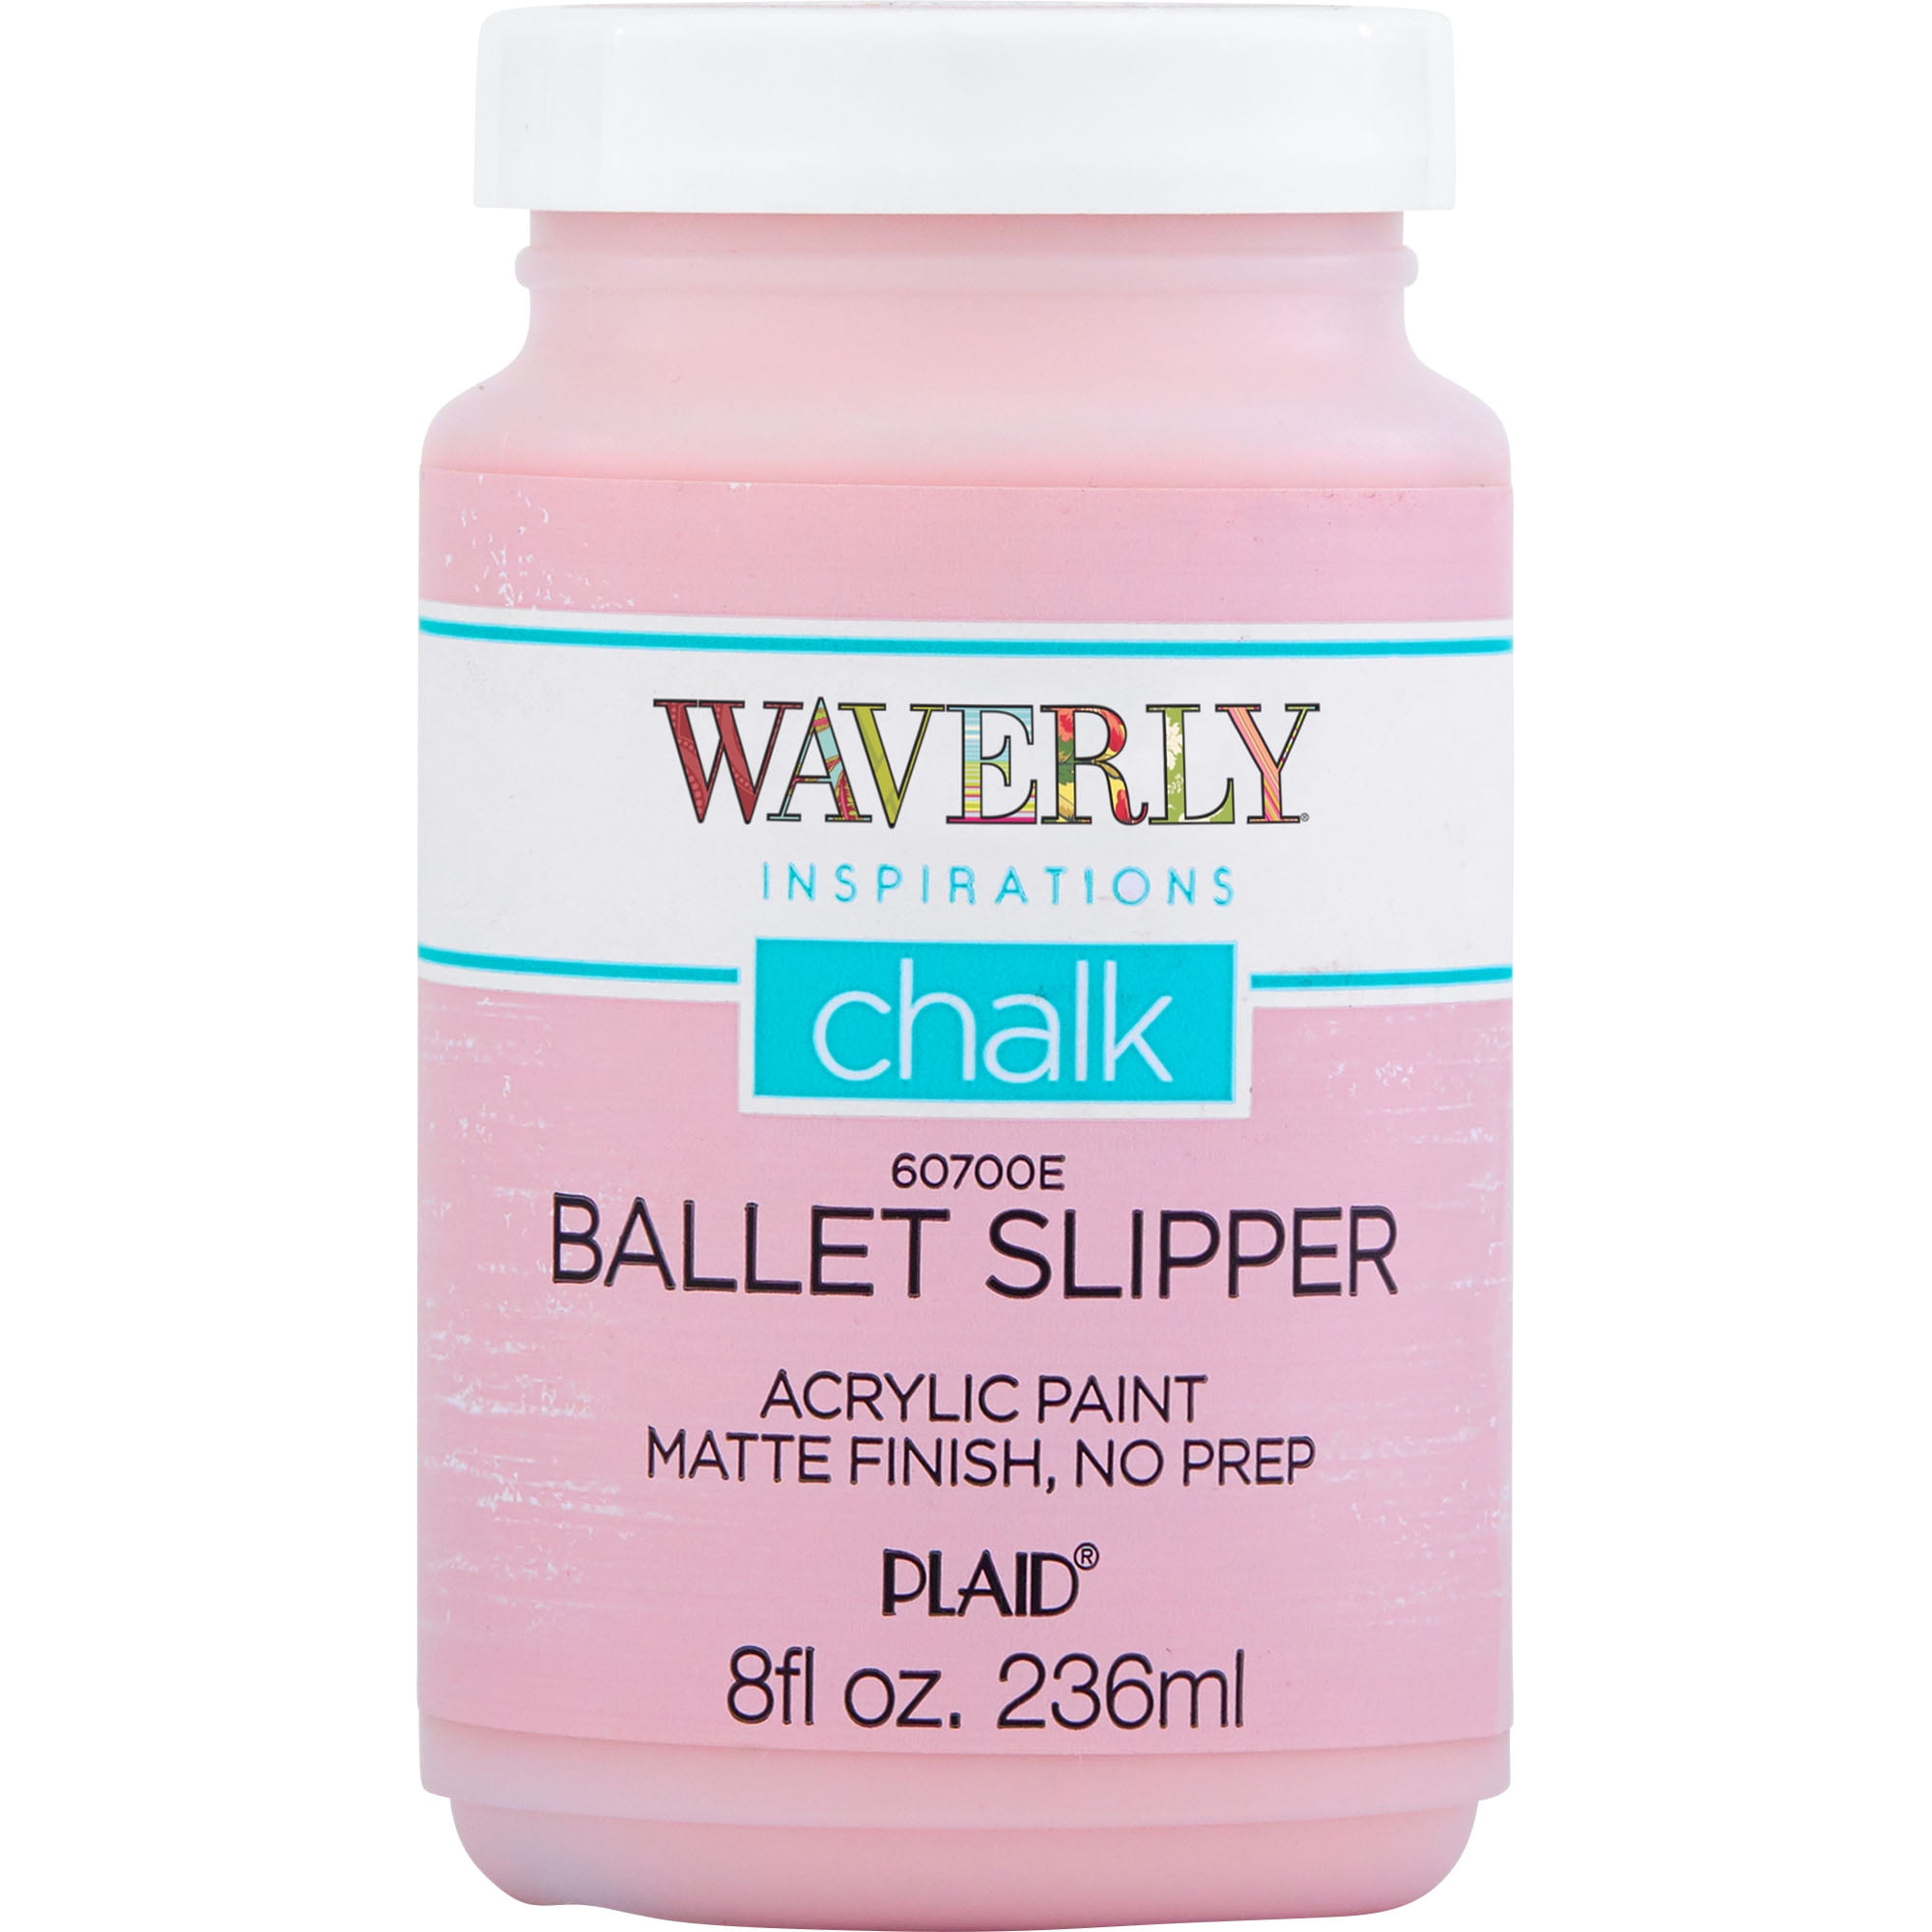 Waverly Inspirations Chalk Paint, Ultra Matte, Ballet Slipper, 8 fl oz